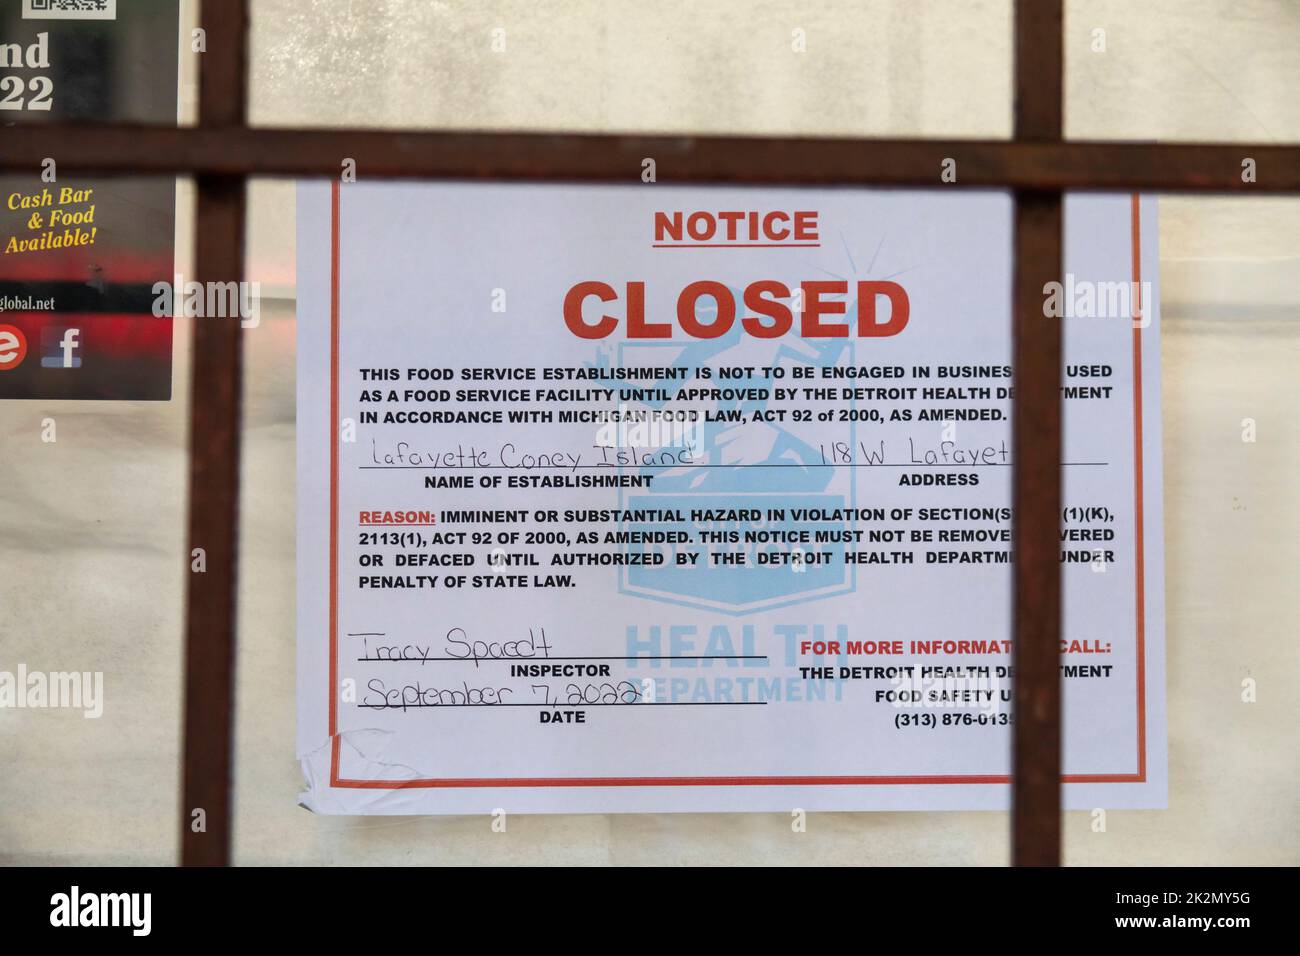 Detroit, Michigan - Un ordine di reparto di salute è inviato chiudendo il popolare ristorante Lafayette Coney Island a causa di un'infestazione di roditori. Foto Stock